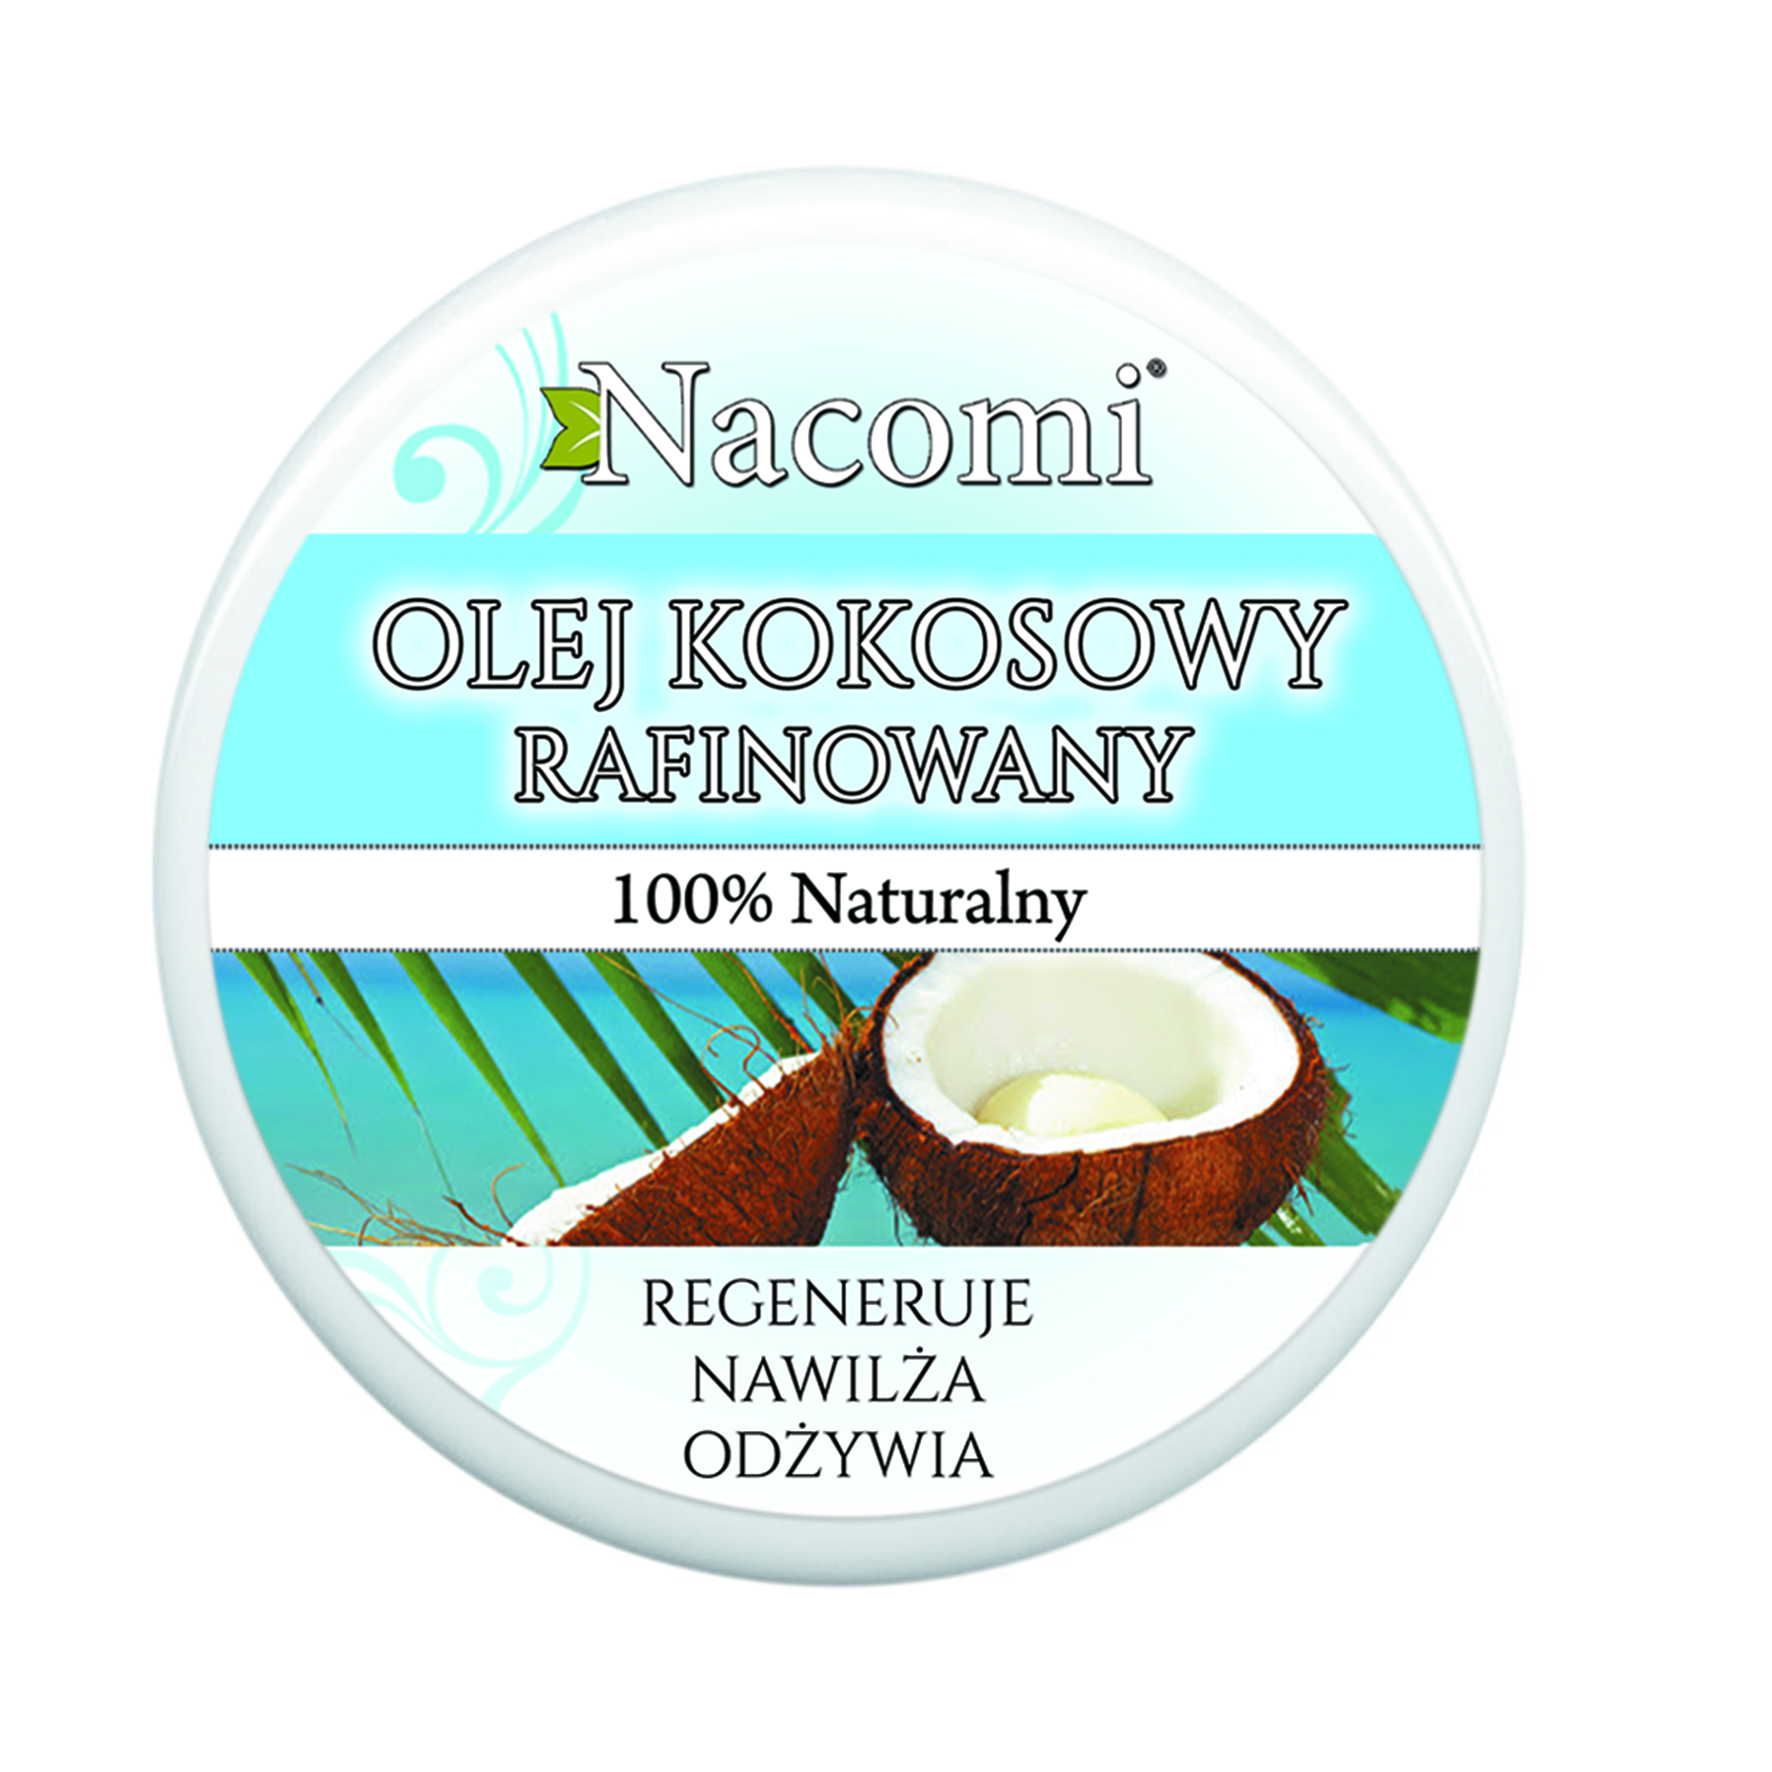 Olej kokosowy rafinowany – nacomi